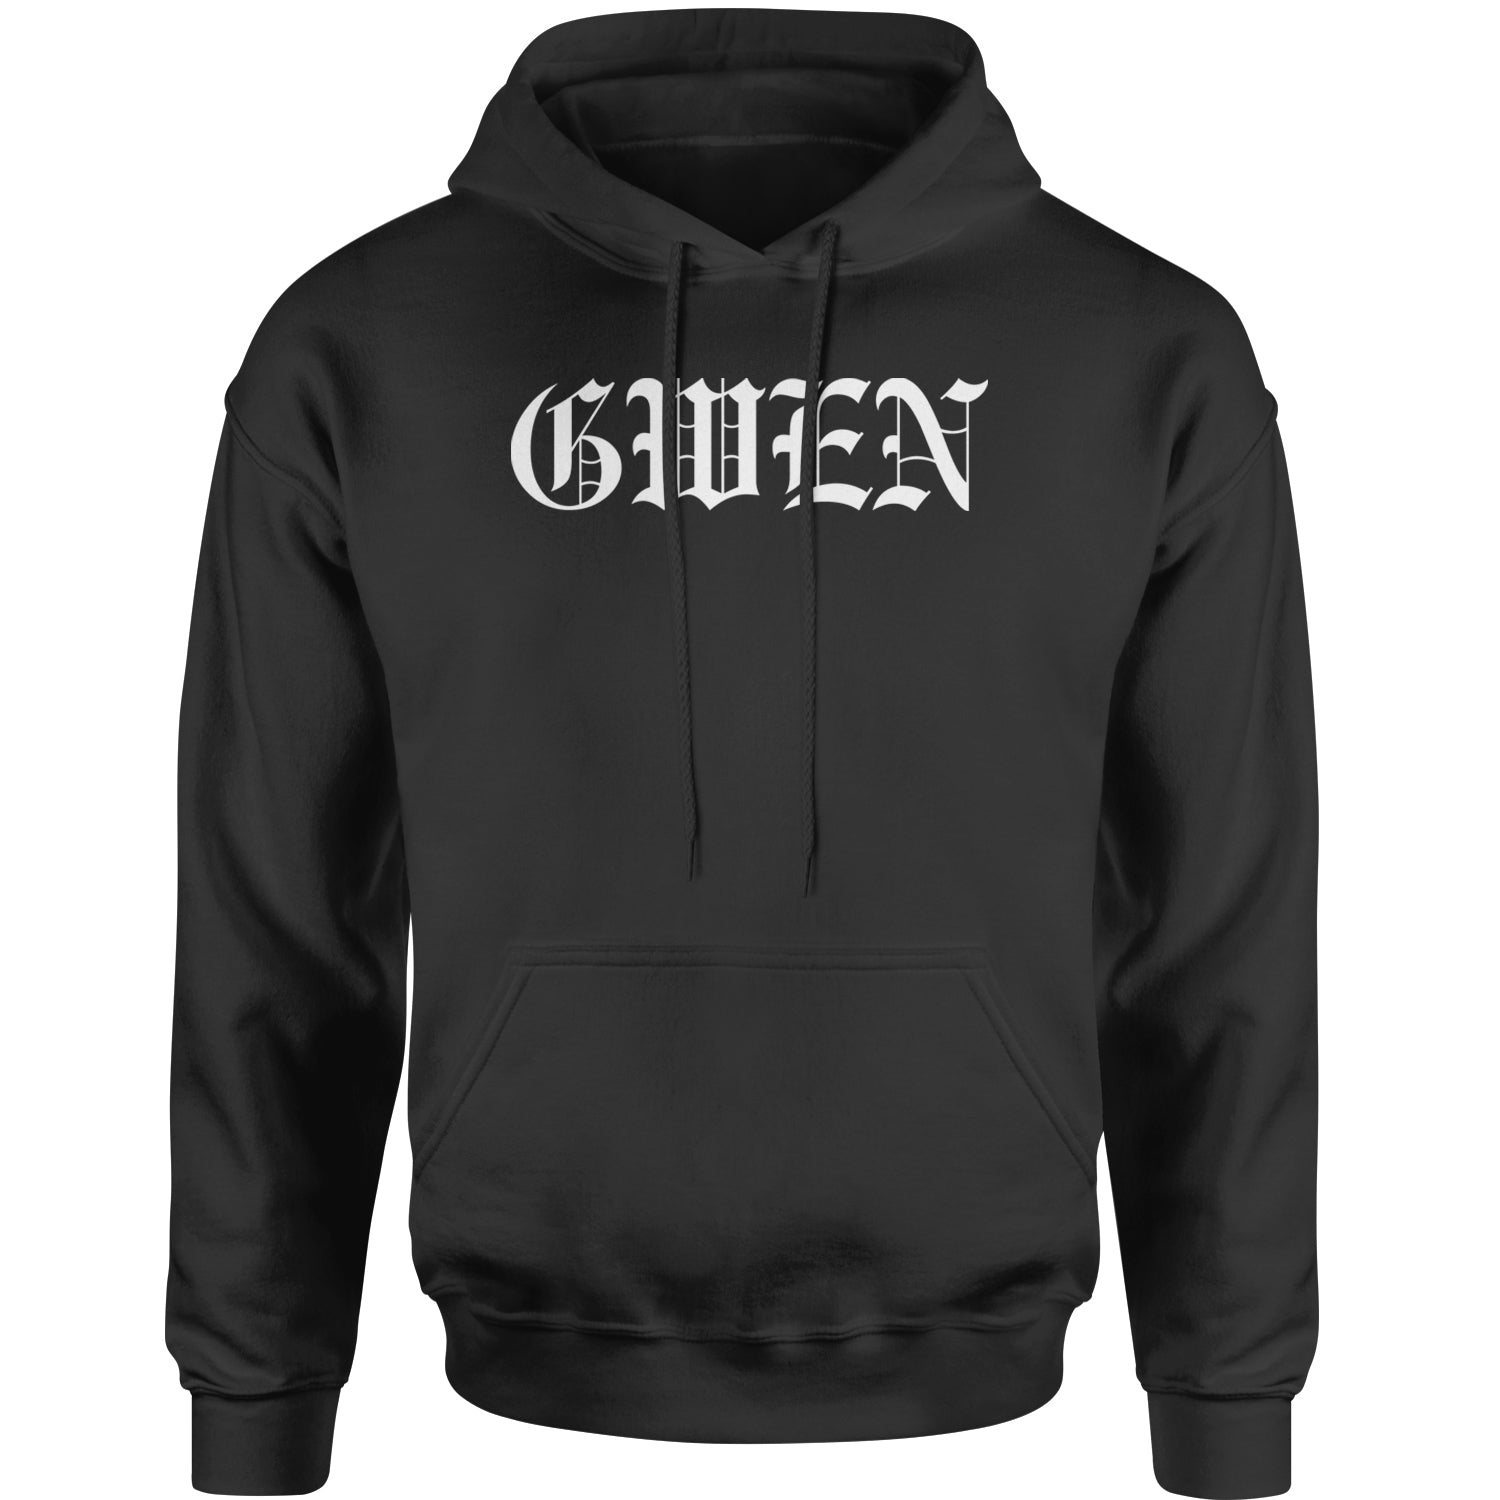 Gwen 90's Y2K Throwback Grunge Ska Adult Hoodie Sweatshirt